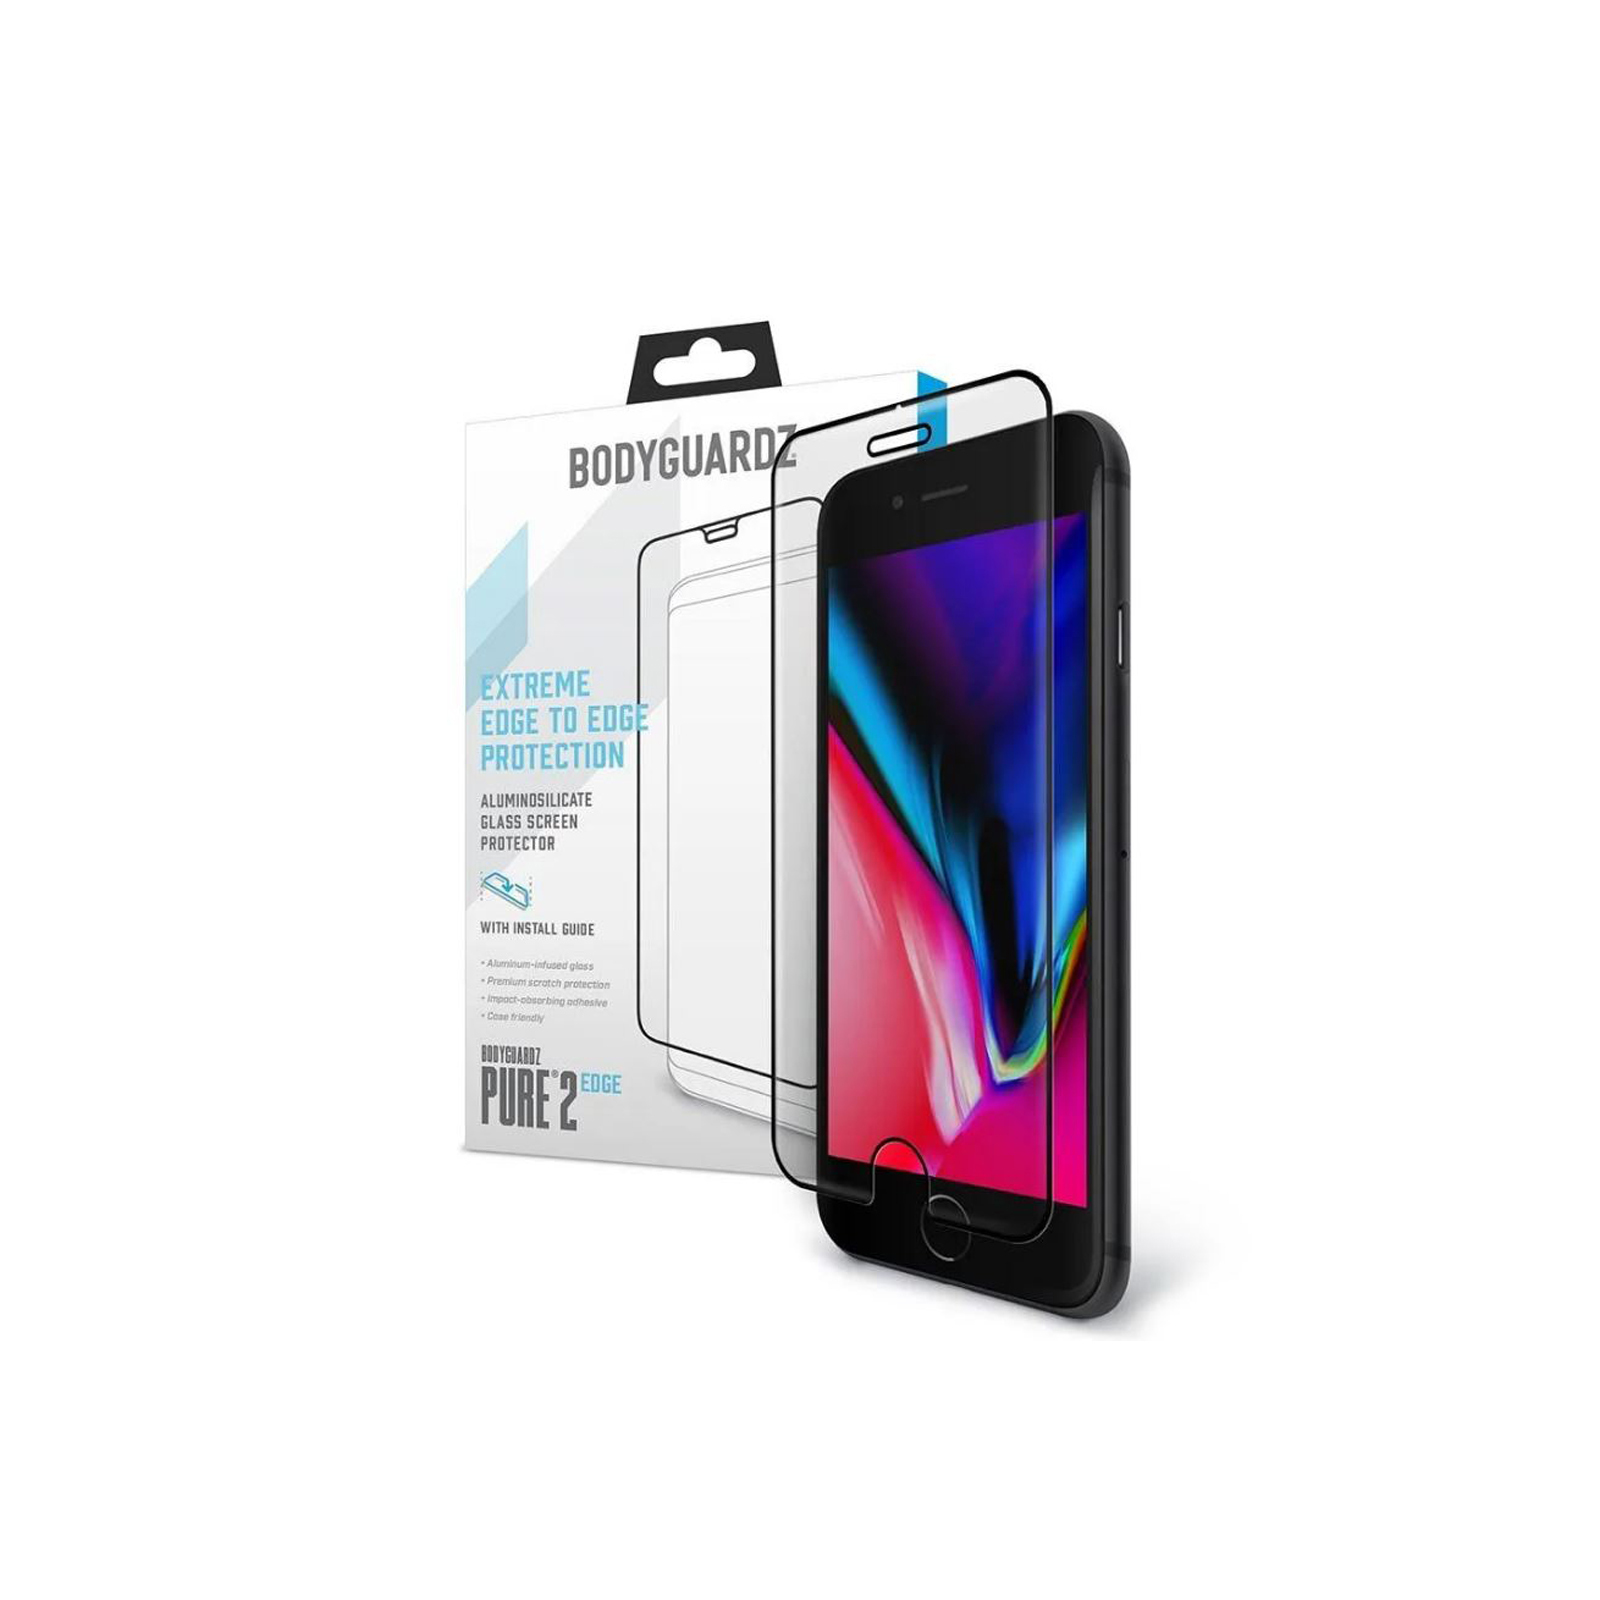 BodyGuardz Sceenpure Glass iPhone 6/6s Screen Protector - Brand New